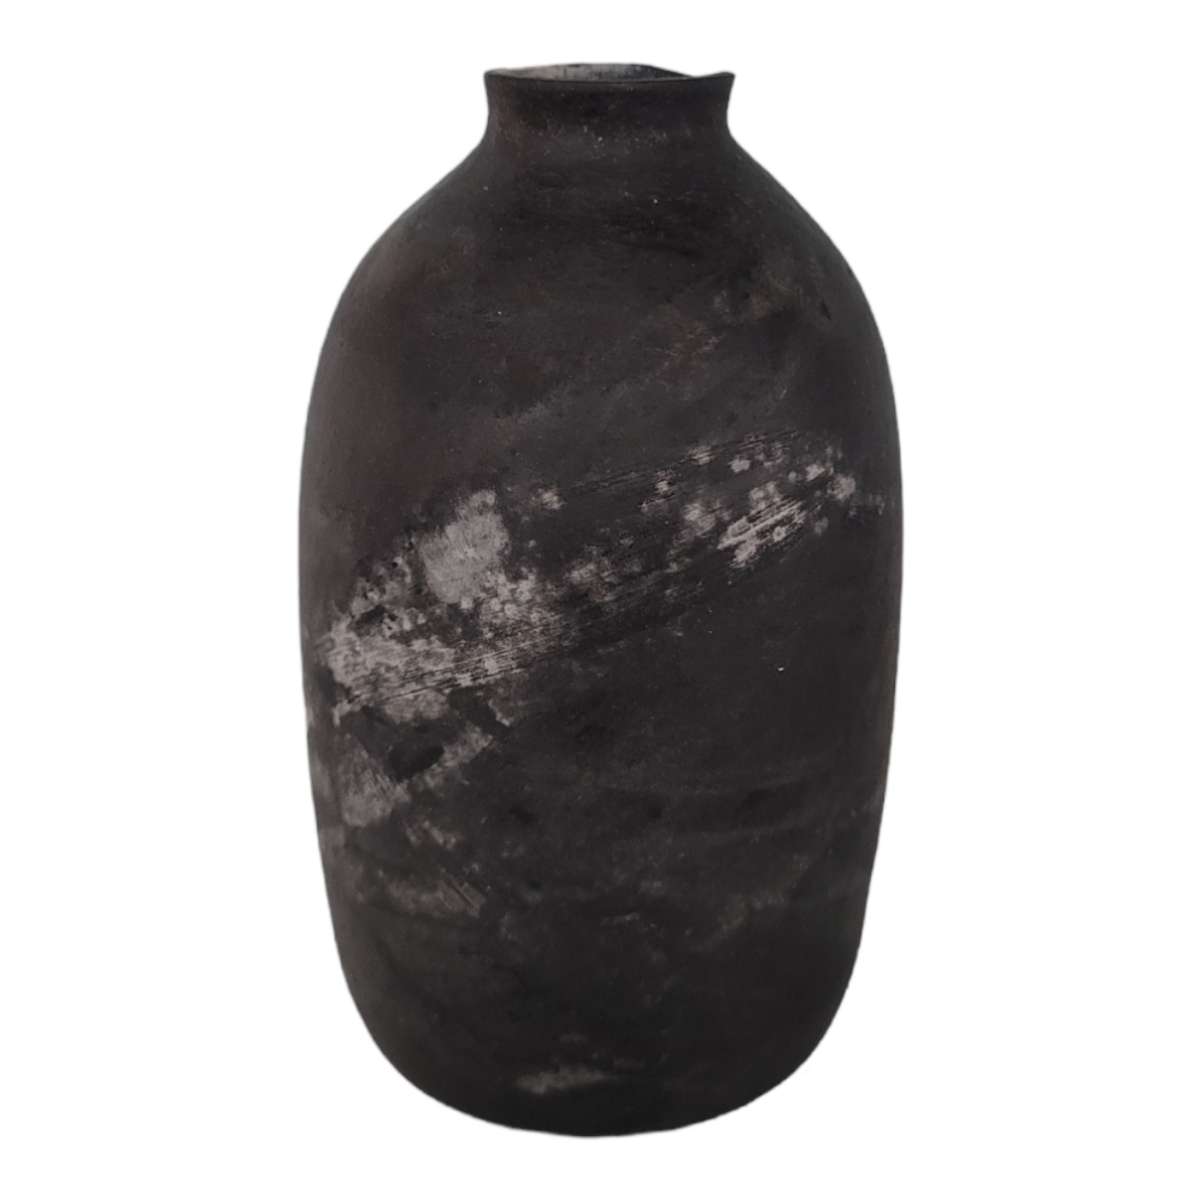 Barrel Fired Vase